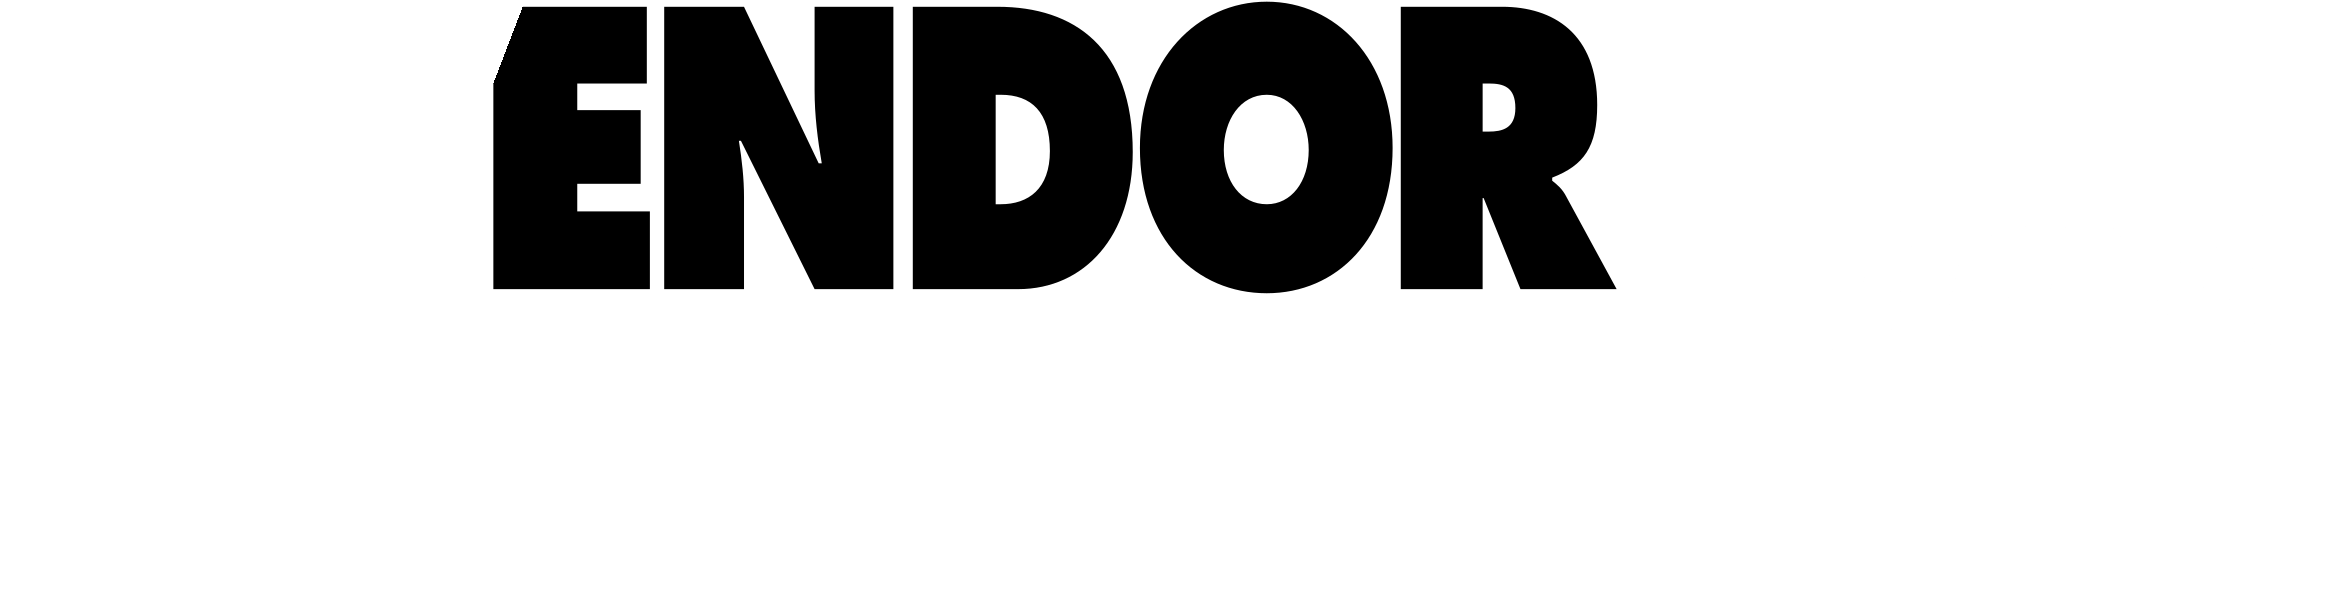 Vendor 2000 Logo Black And White - Prefeitura De Pelotas Clipart (2400x2400), Png Download